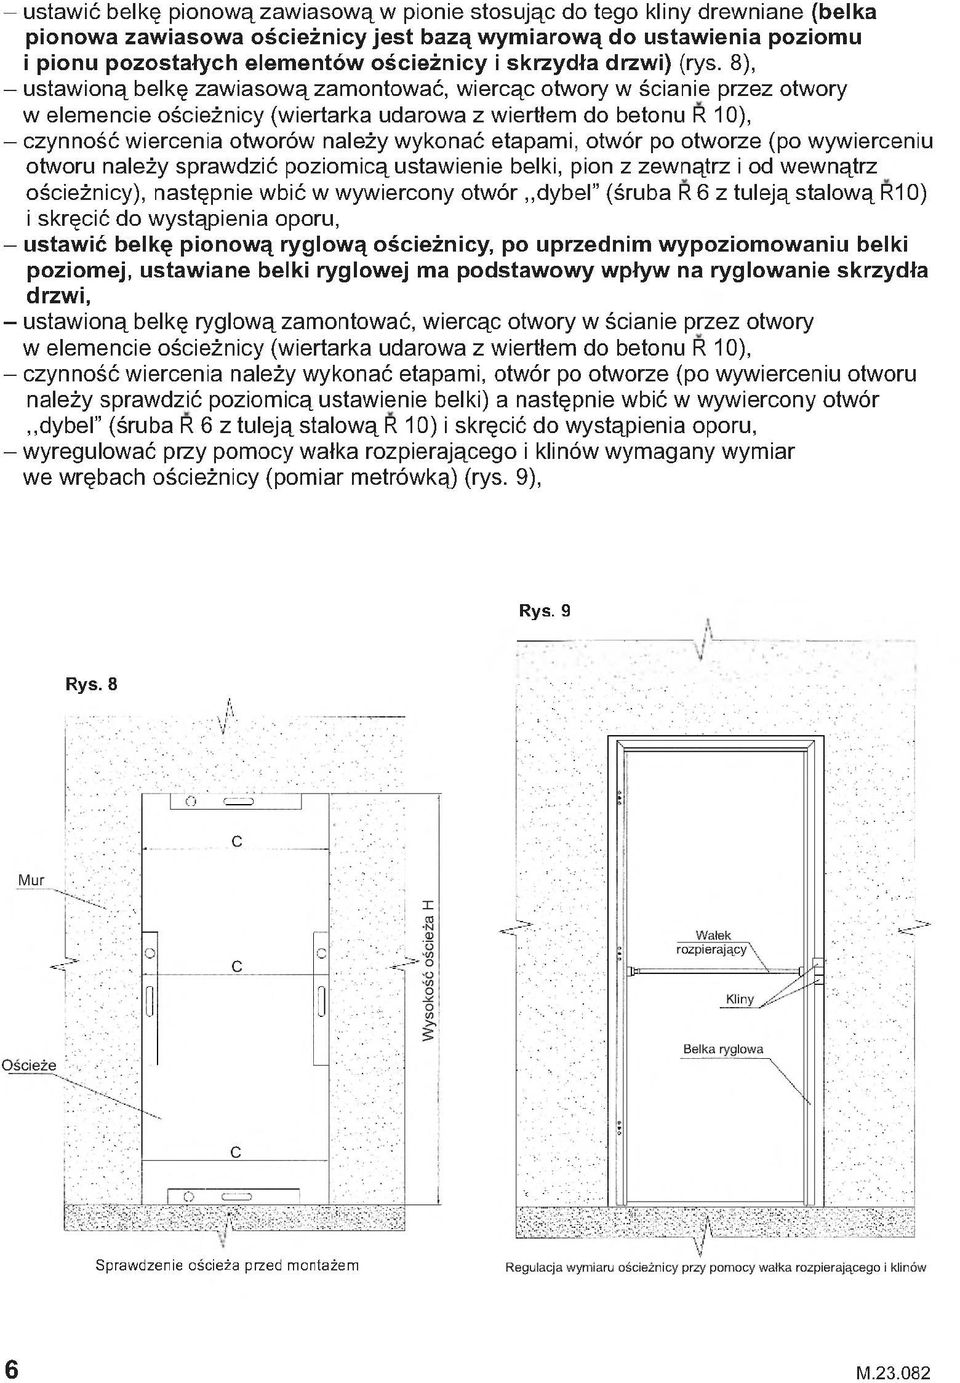 8), - ustawioną belkę zawiasową zamontować, wiercąc otwory w ścianie przez otwory w elemencie ościeżnicy (wiertarka udarowa z wiertłem do betonu R 10), - czynność wiercenia otworów należy wykonać